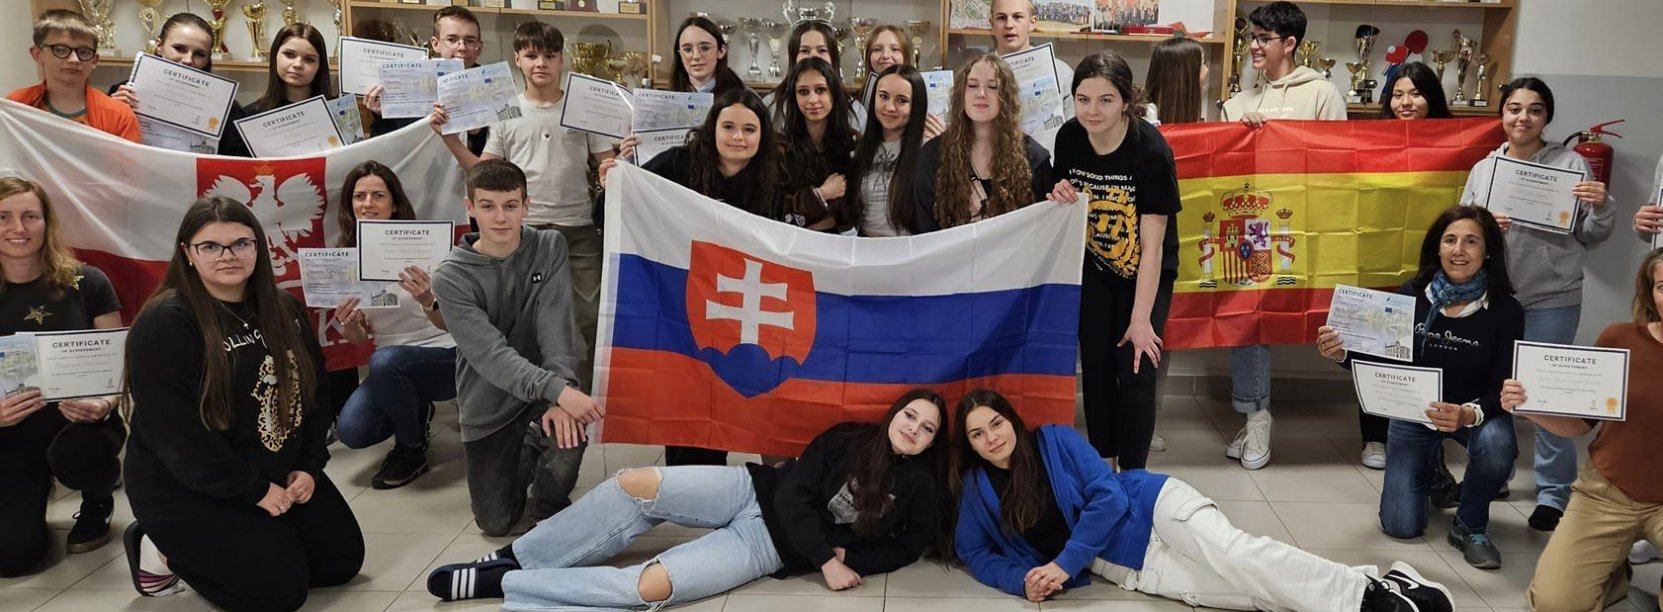 Grupa młodzieży z Polski, Hiszpanii i Słowacji z flagami swoich krajów